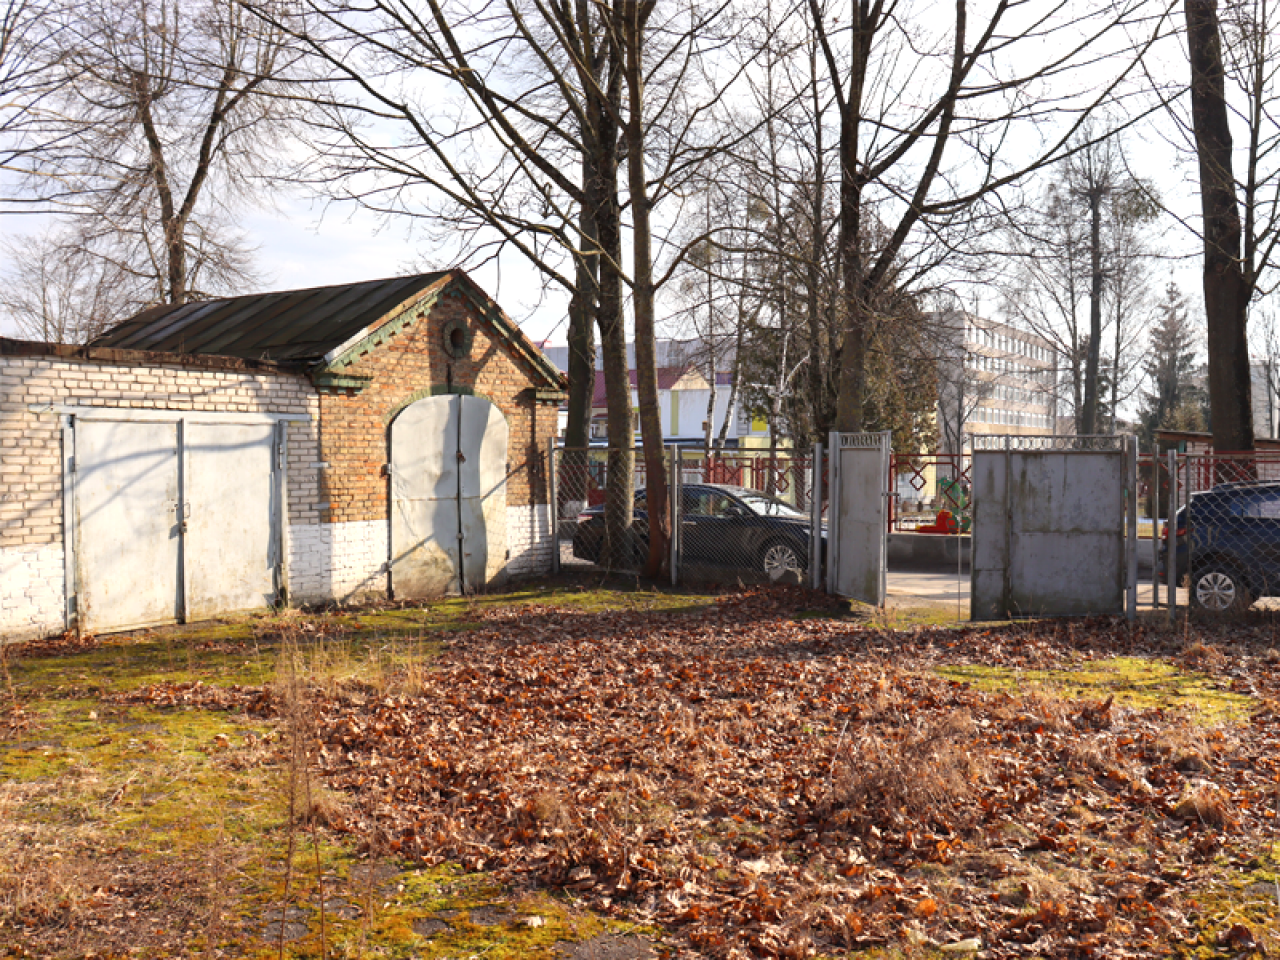 В центре Гродно напротив Лютеранской кирхи предлагают задешево купить землю под торговый центр или жилье. Но есть один нюанс